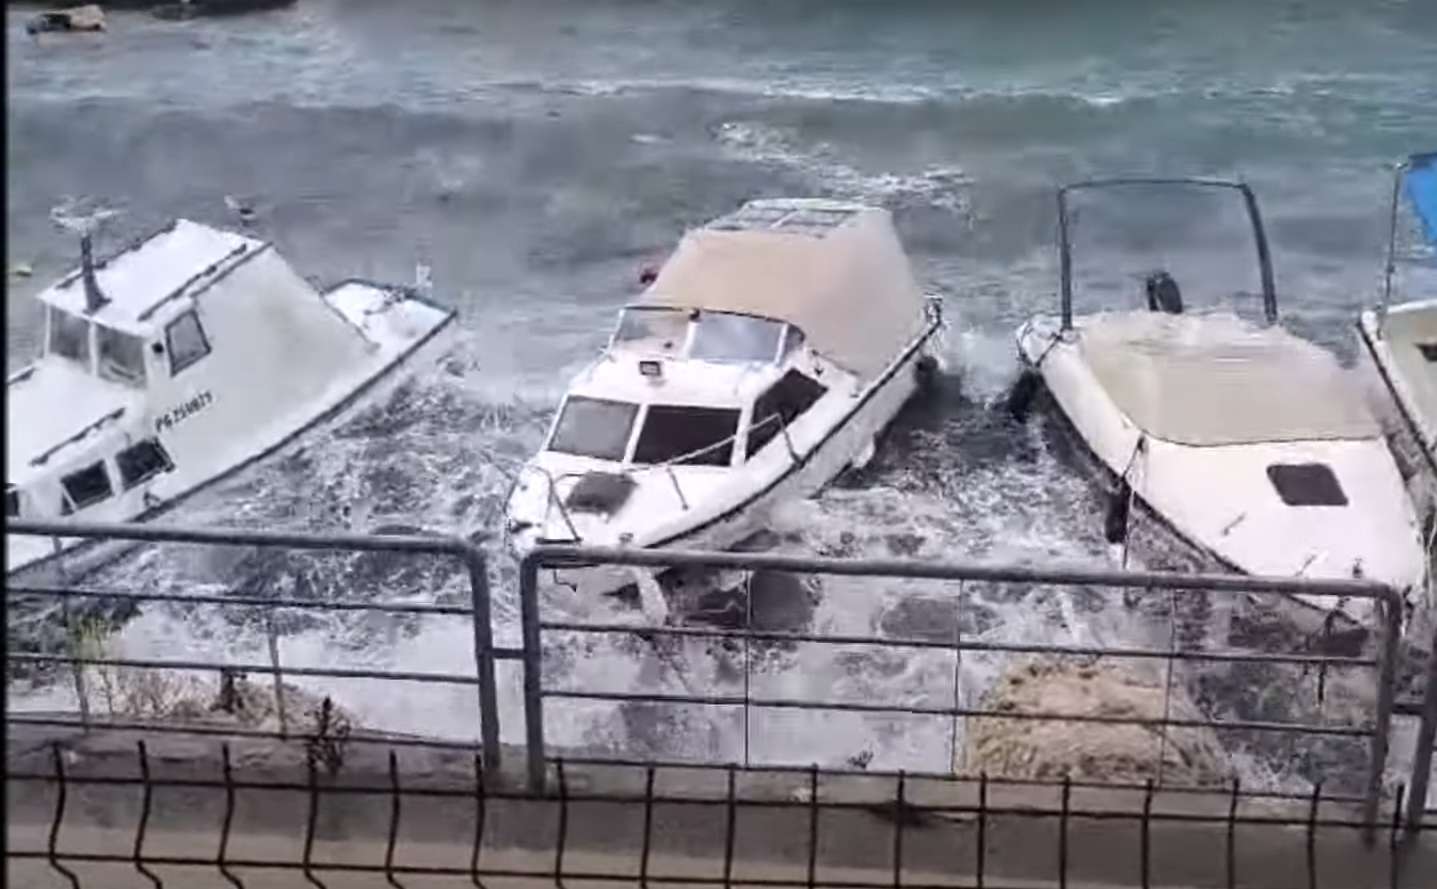 Pokoli felvételek: akkora vihar volt a horvát tengerparton, hogy papírhajóként dobálta a jachtokat a szél